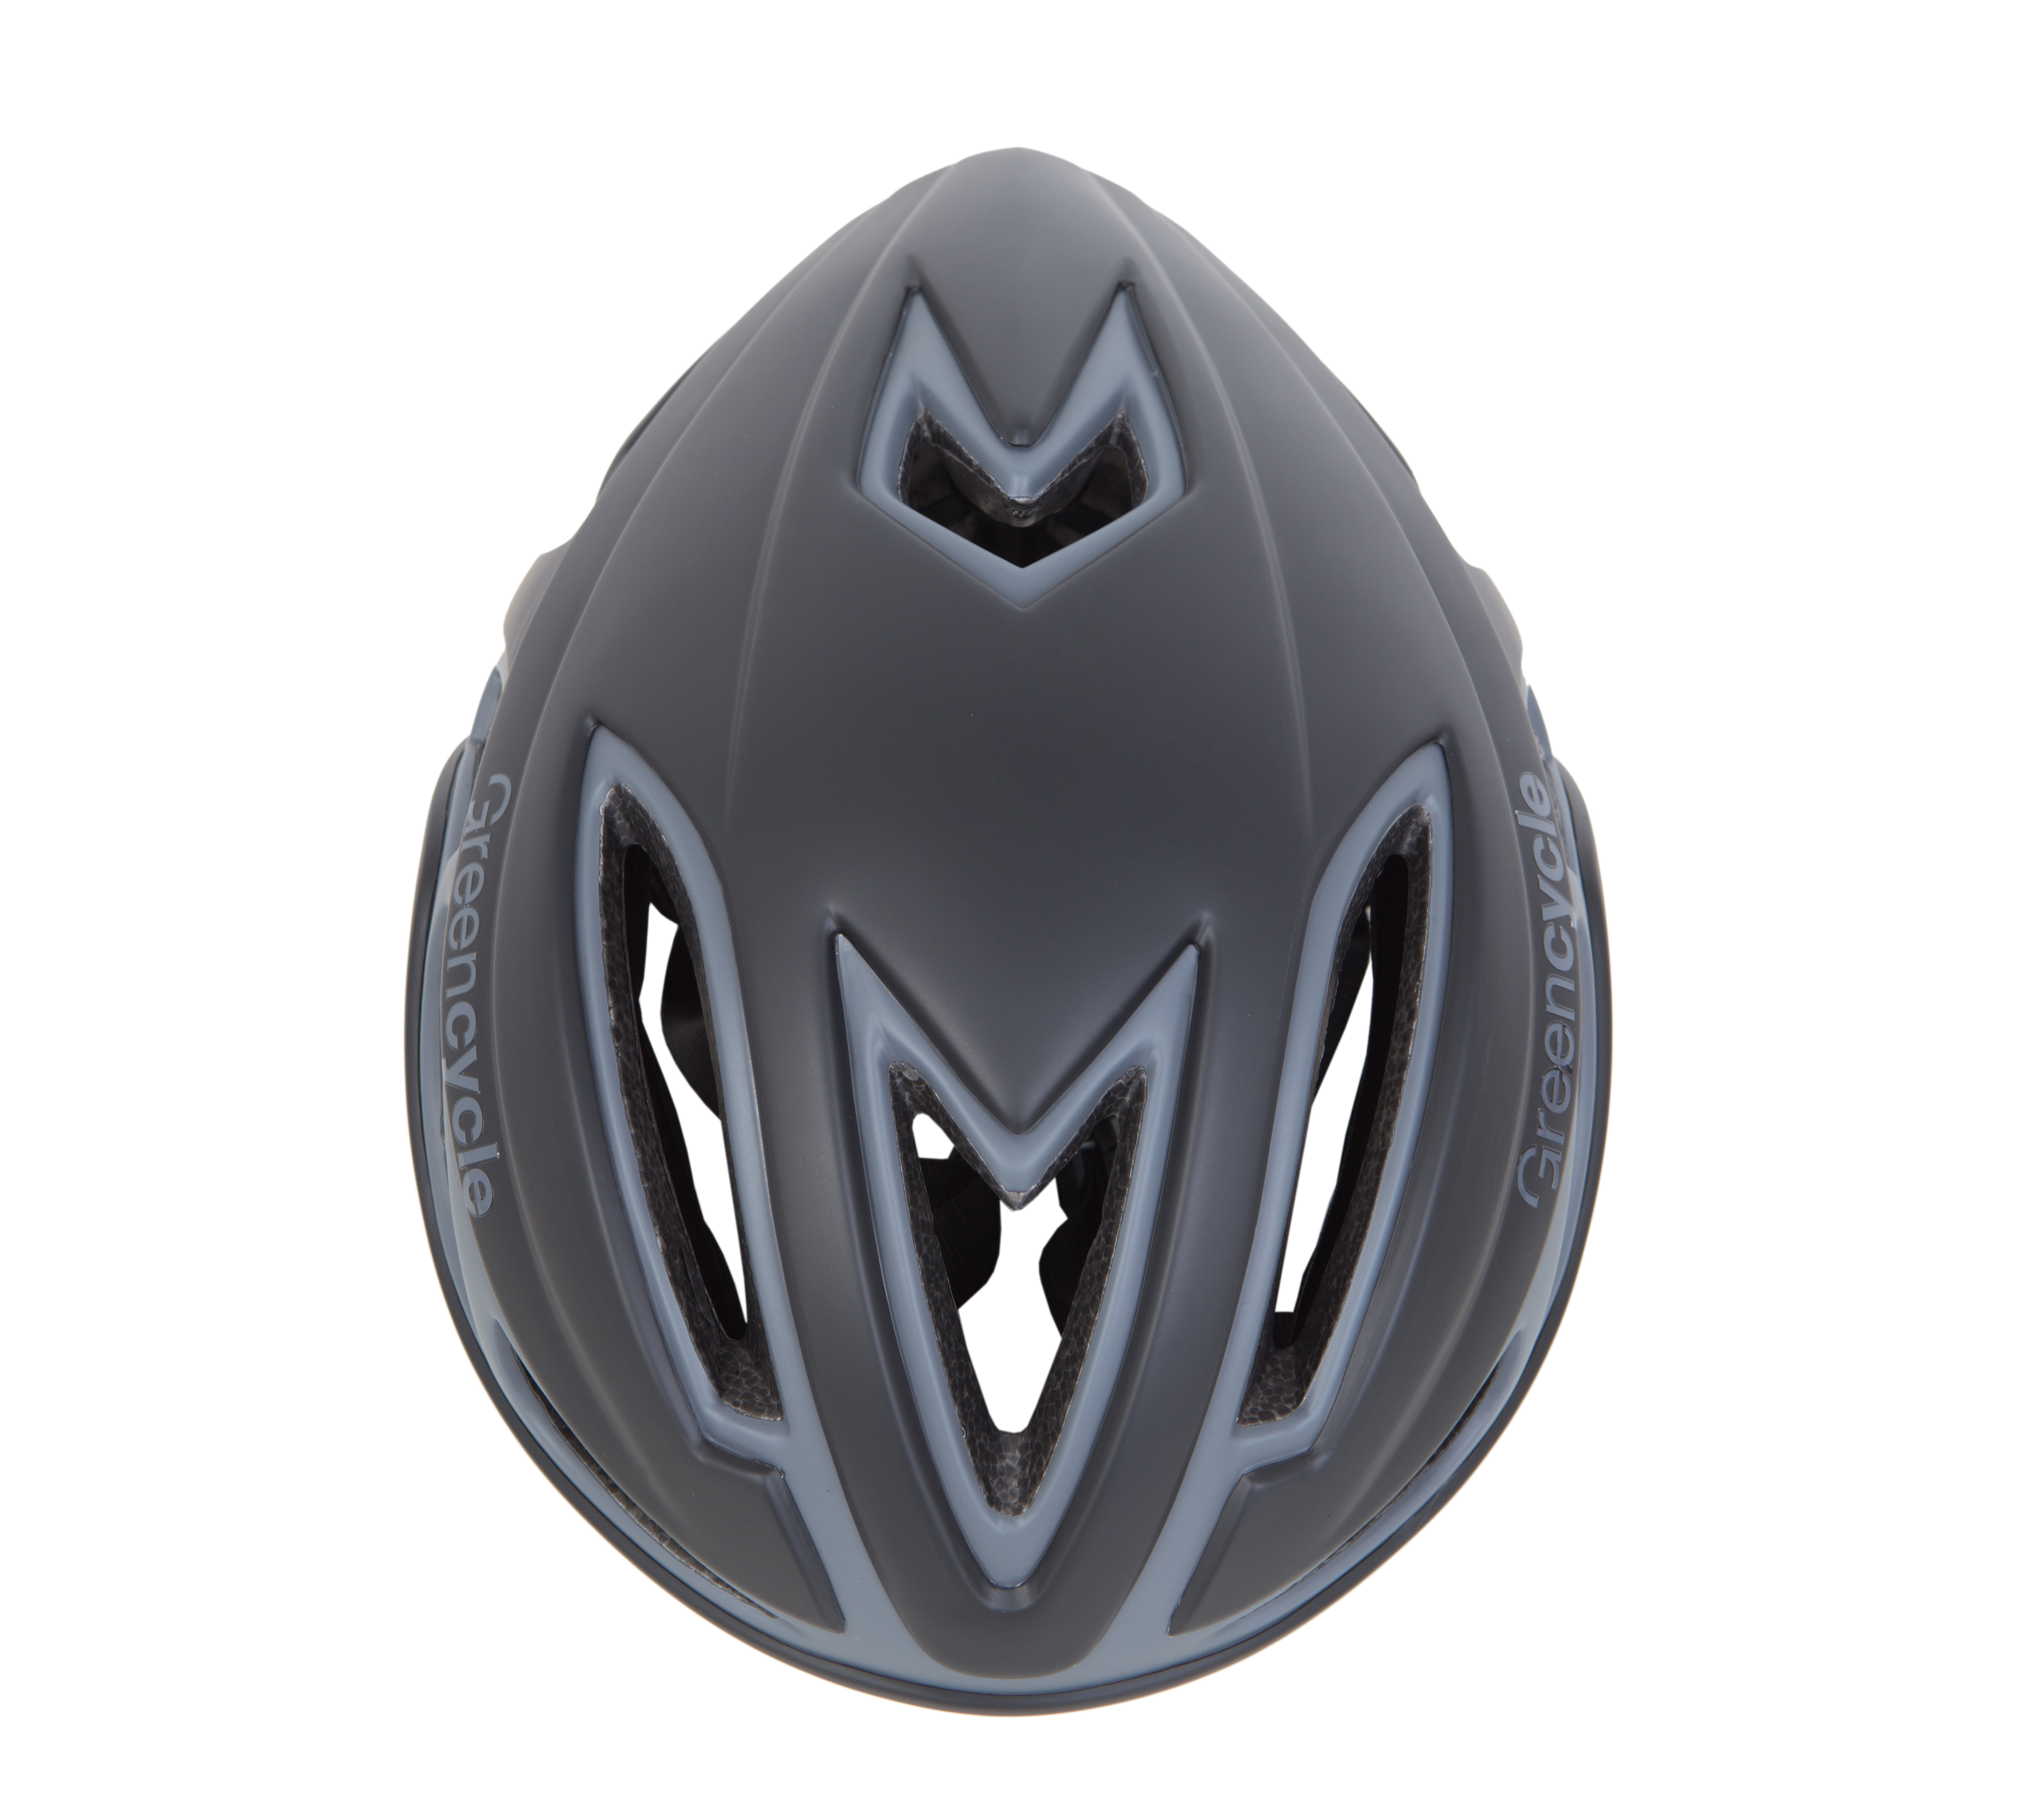 Шлем Green Cycle Jet размер M для шоссе/триатлона и гонок с раздельным стартом черно-серый матовый фото 2